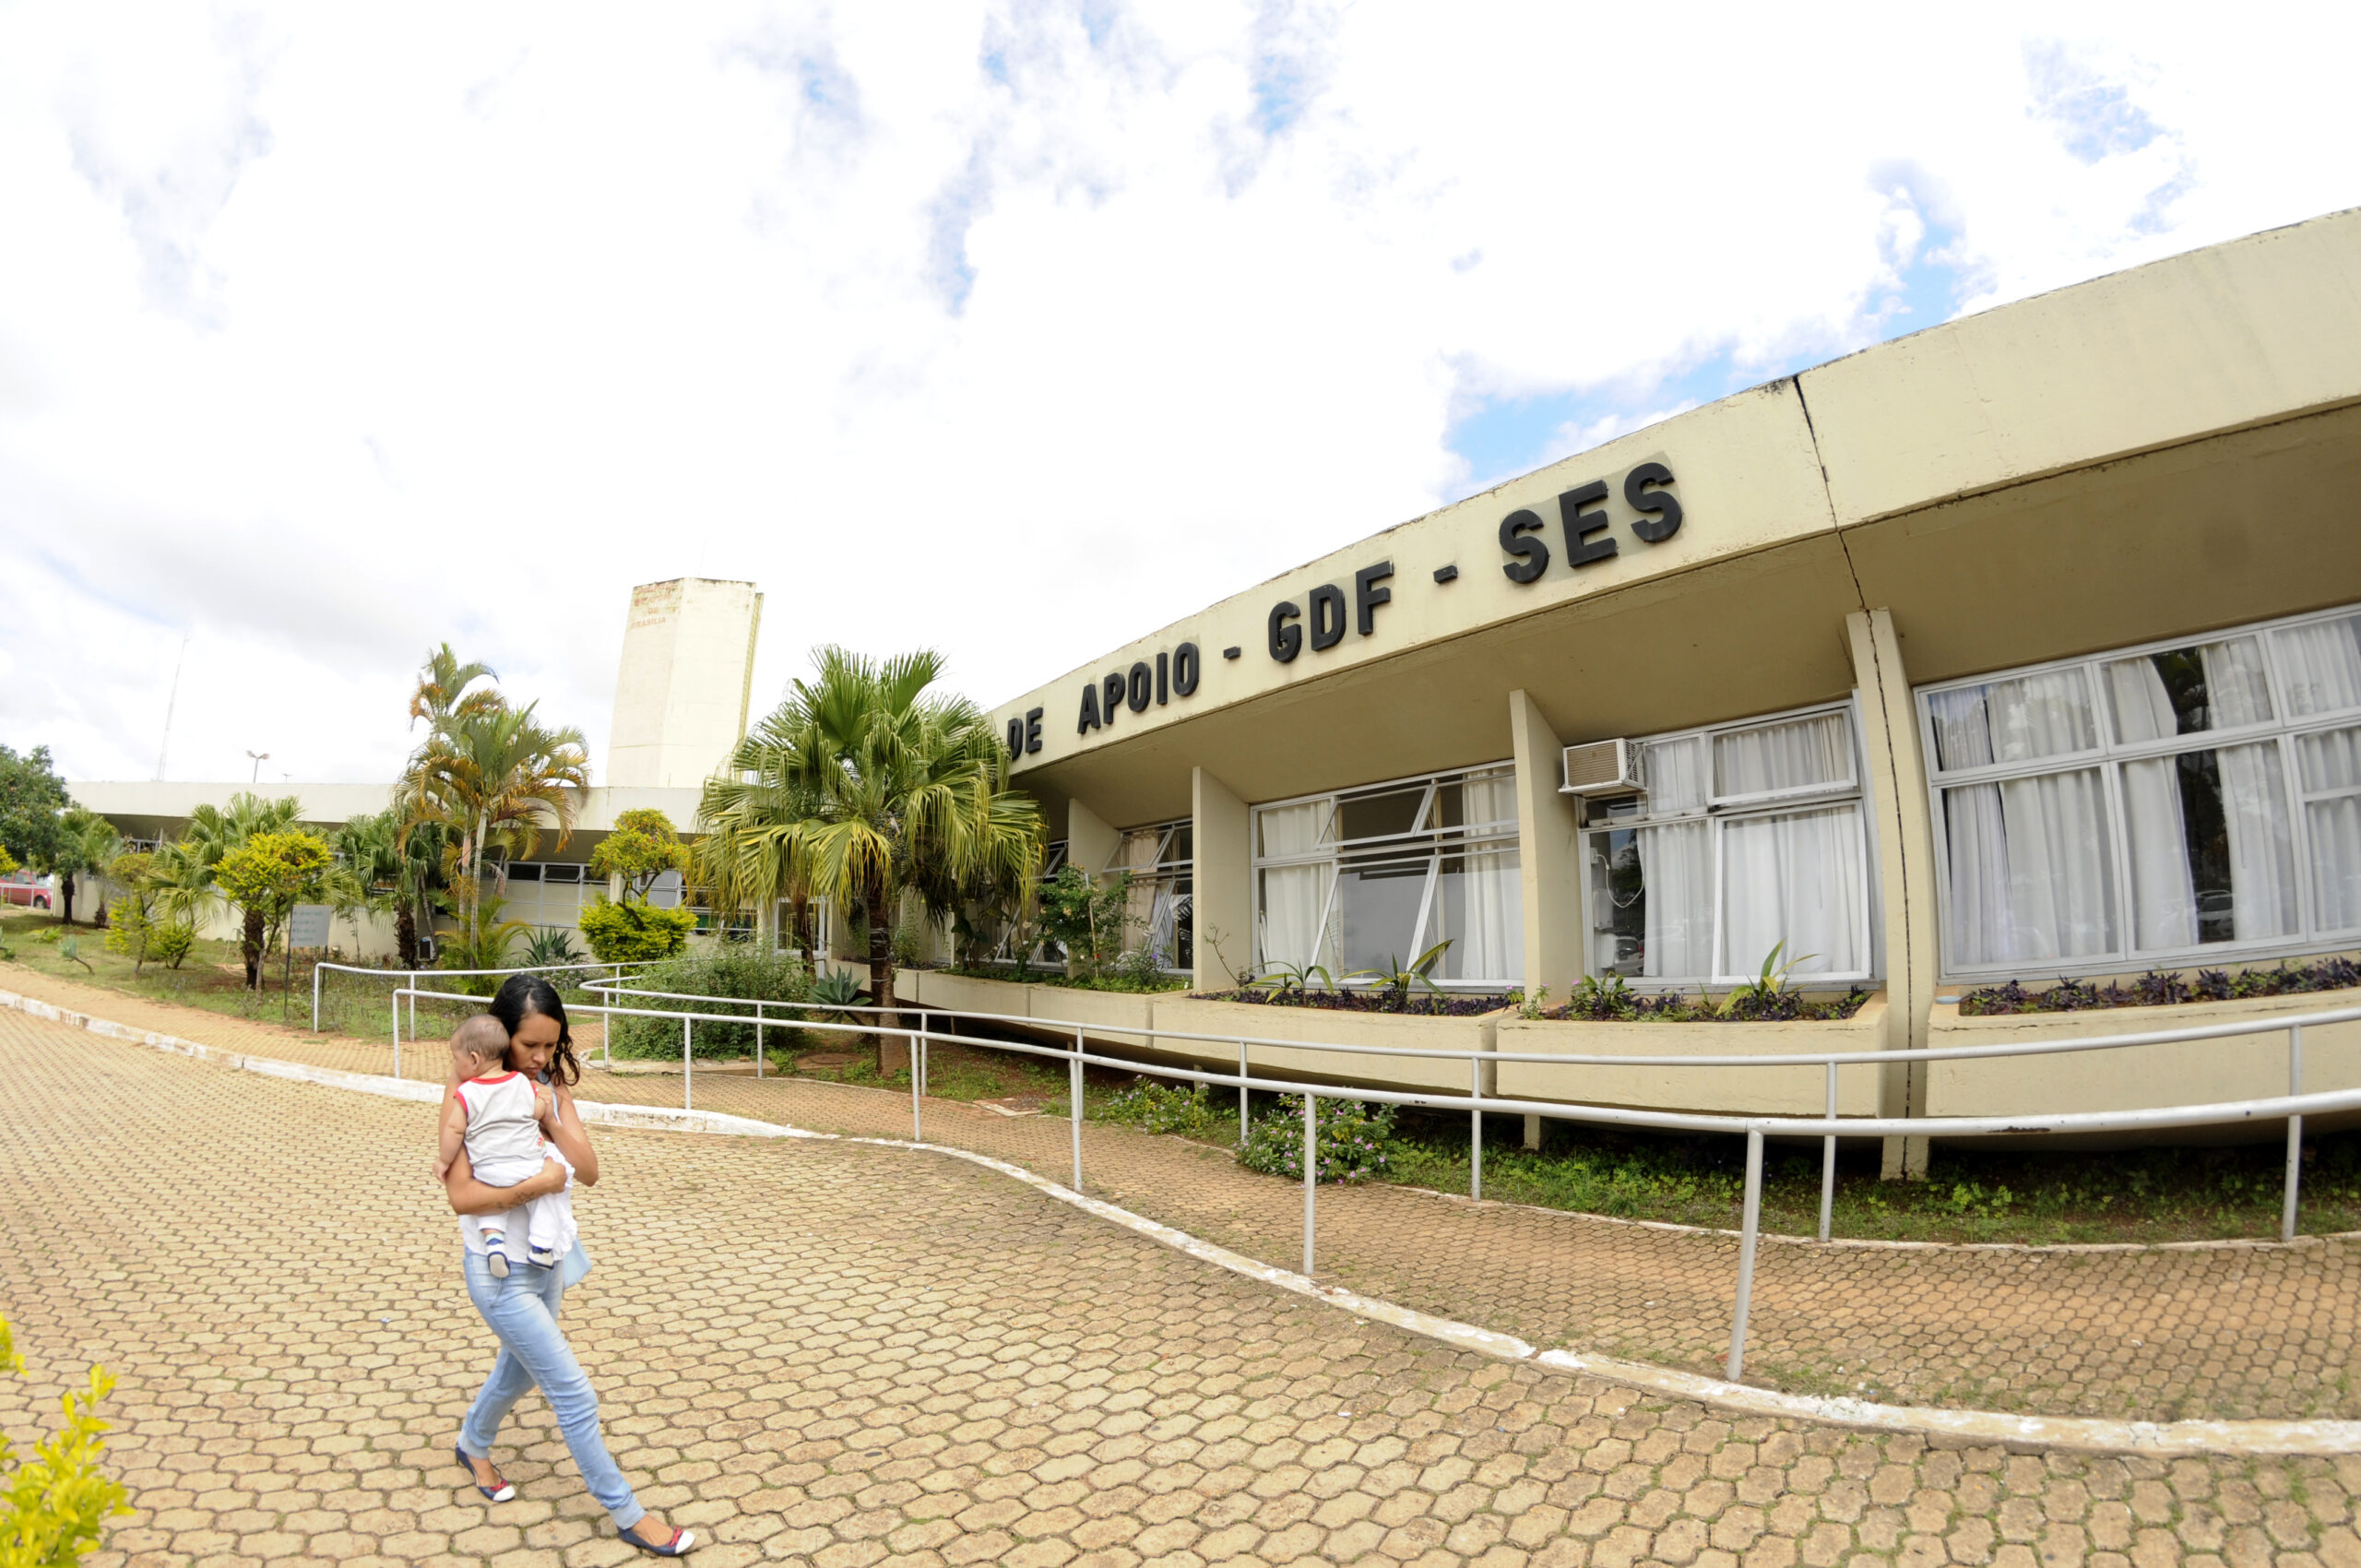 Os Serviços de Cuidados Paliativos do Hospital de Apoio de Brasília